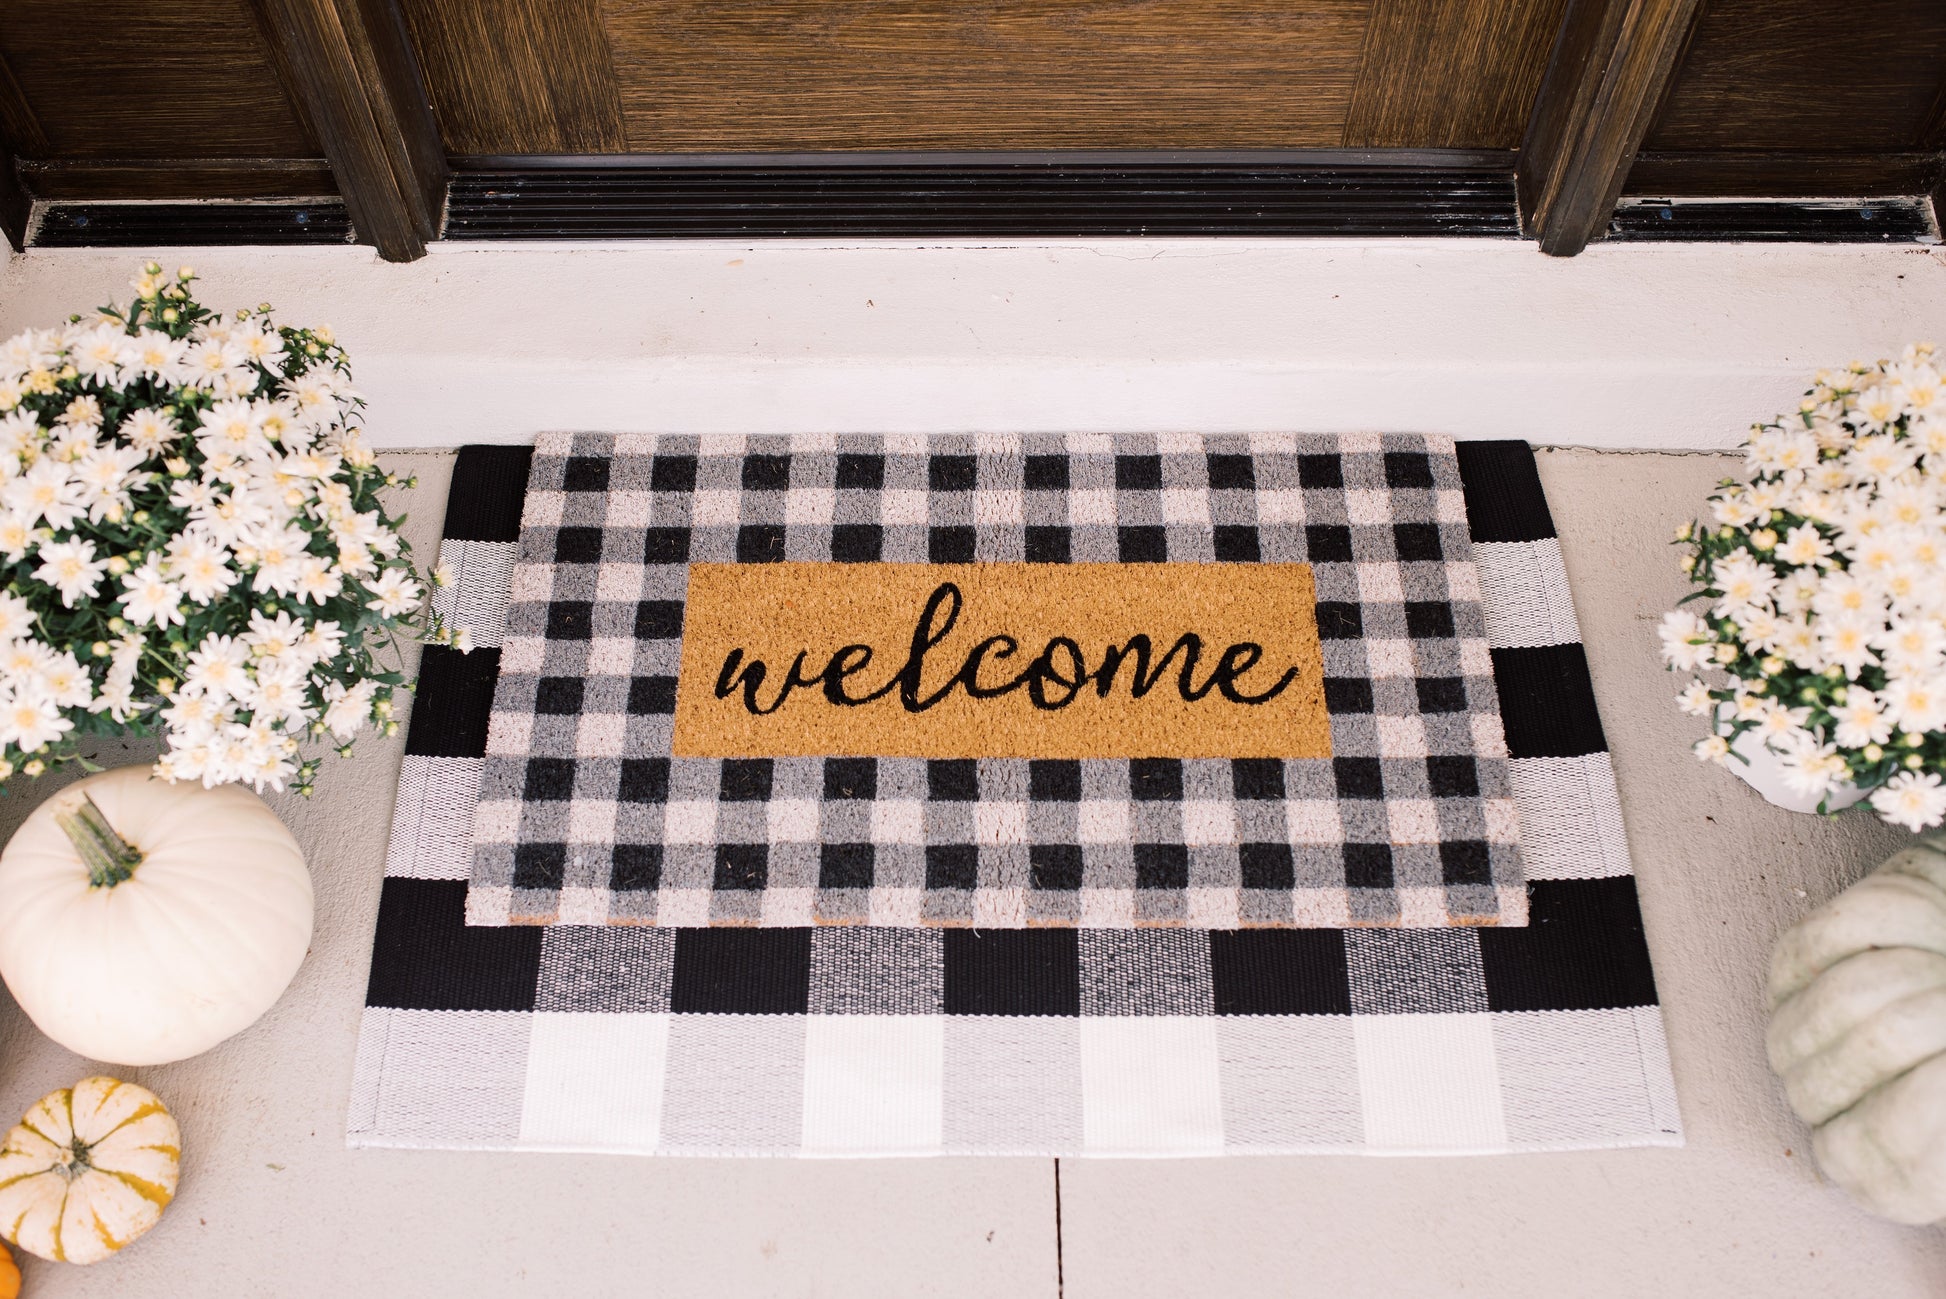 Welcome Gingham Plaid Coir Outdoor Doormat, (18 x 30)